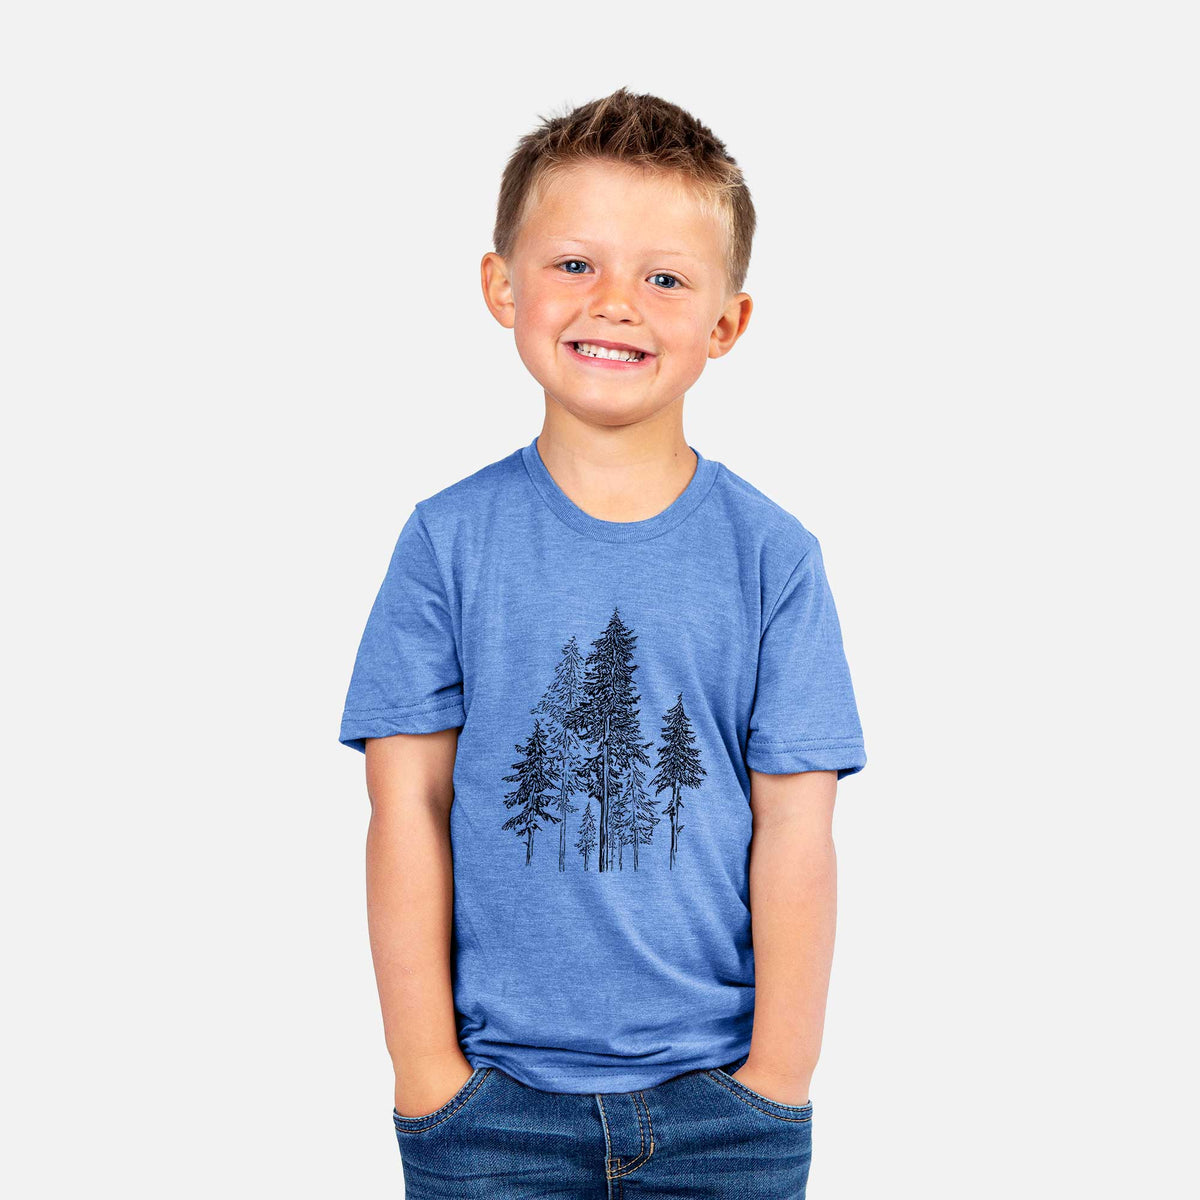 Hemlock Forest - Kids Shirt